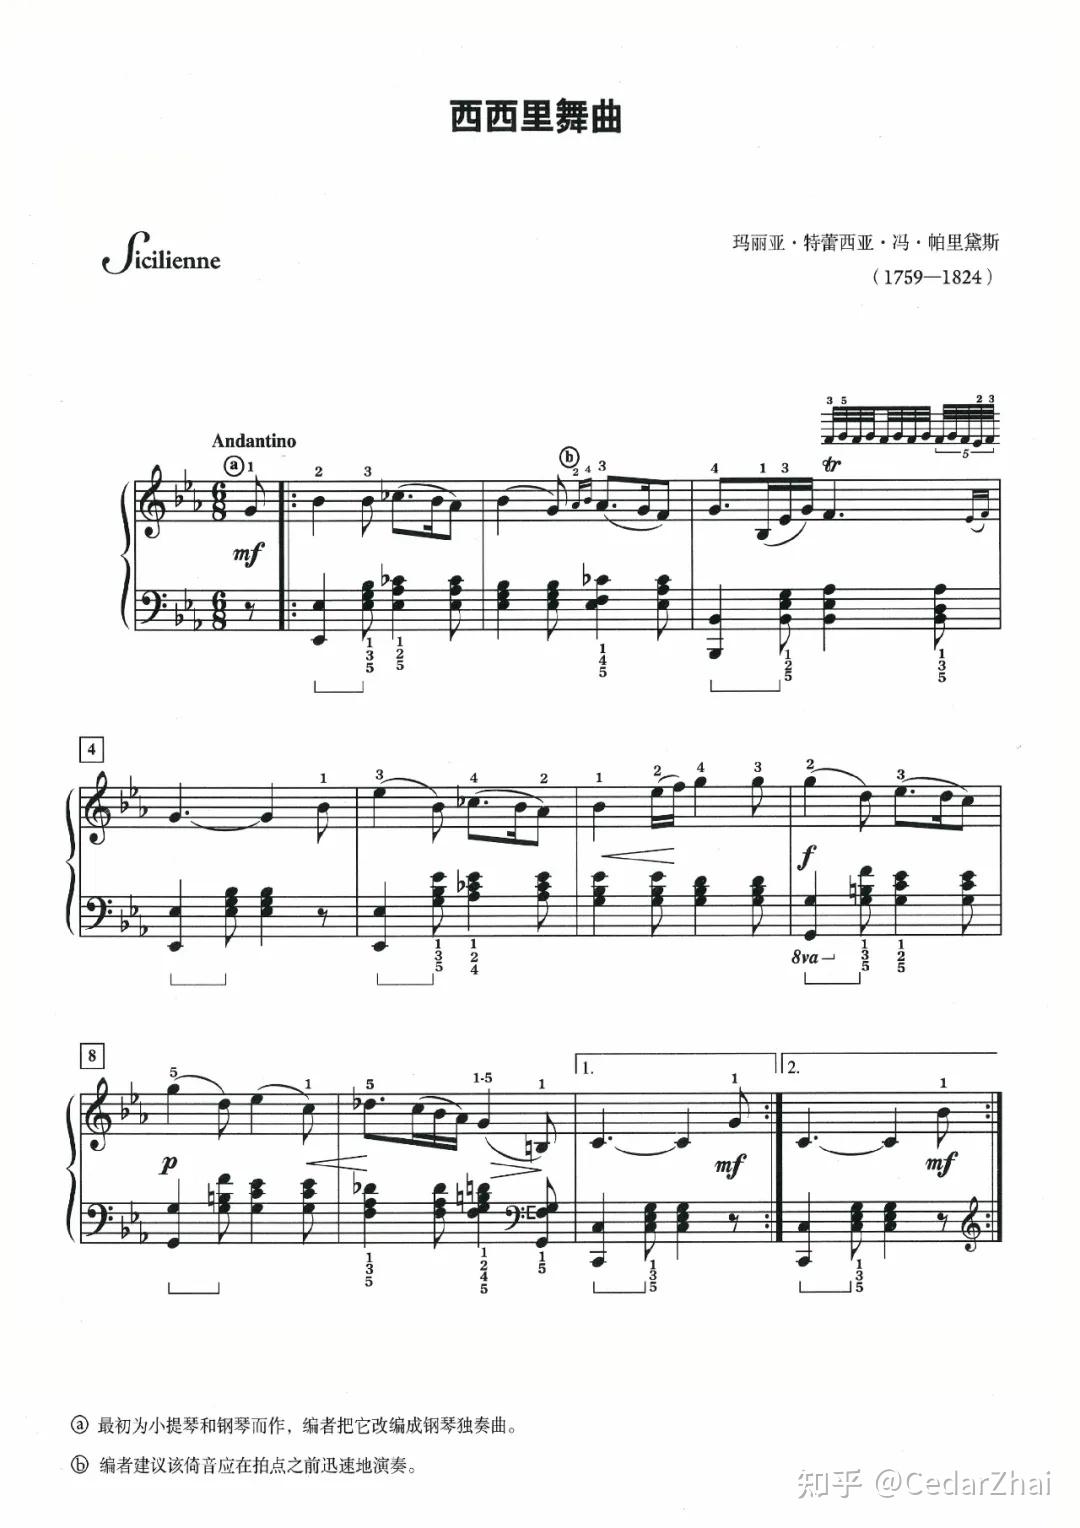 《47.西西里舞曲,钢琴谱》可爱的钢琴古典名曲,詹姆斯·巴斯蒂安|弹琴吧|钢琴谱|吉他谱|钢琴曲|乐谱|五线谱|简谱|高清免费下载|蛐蛐钢琴网